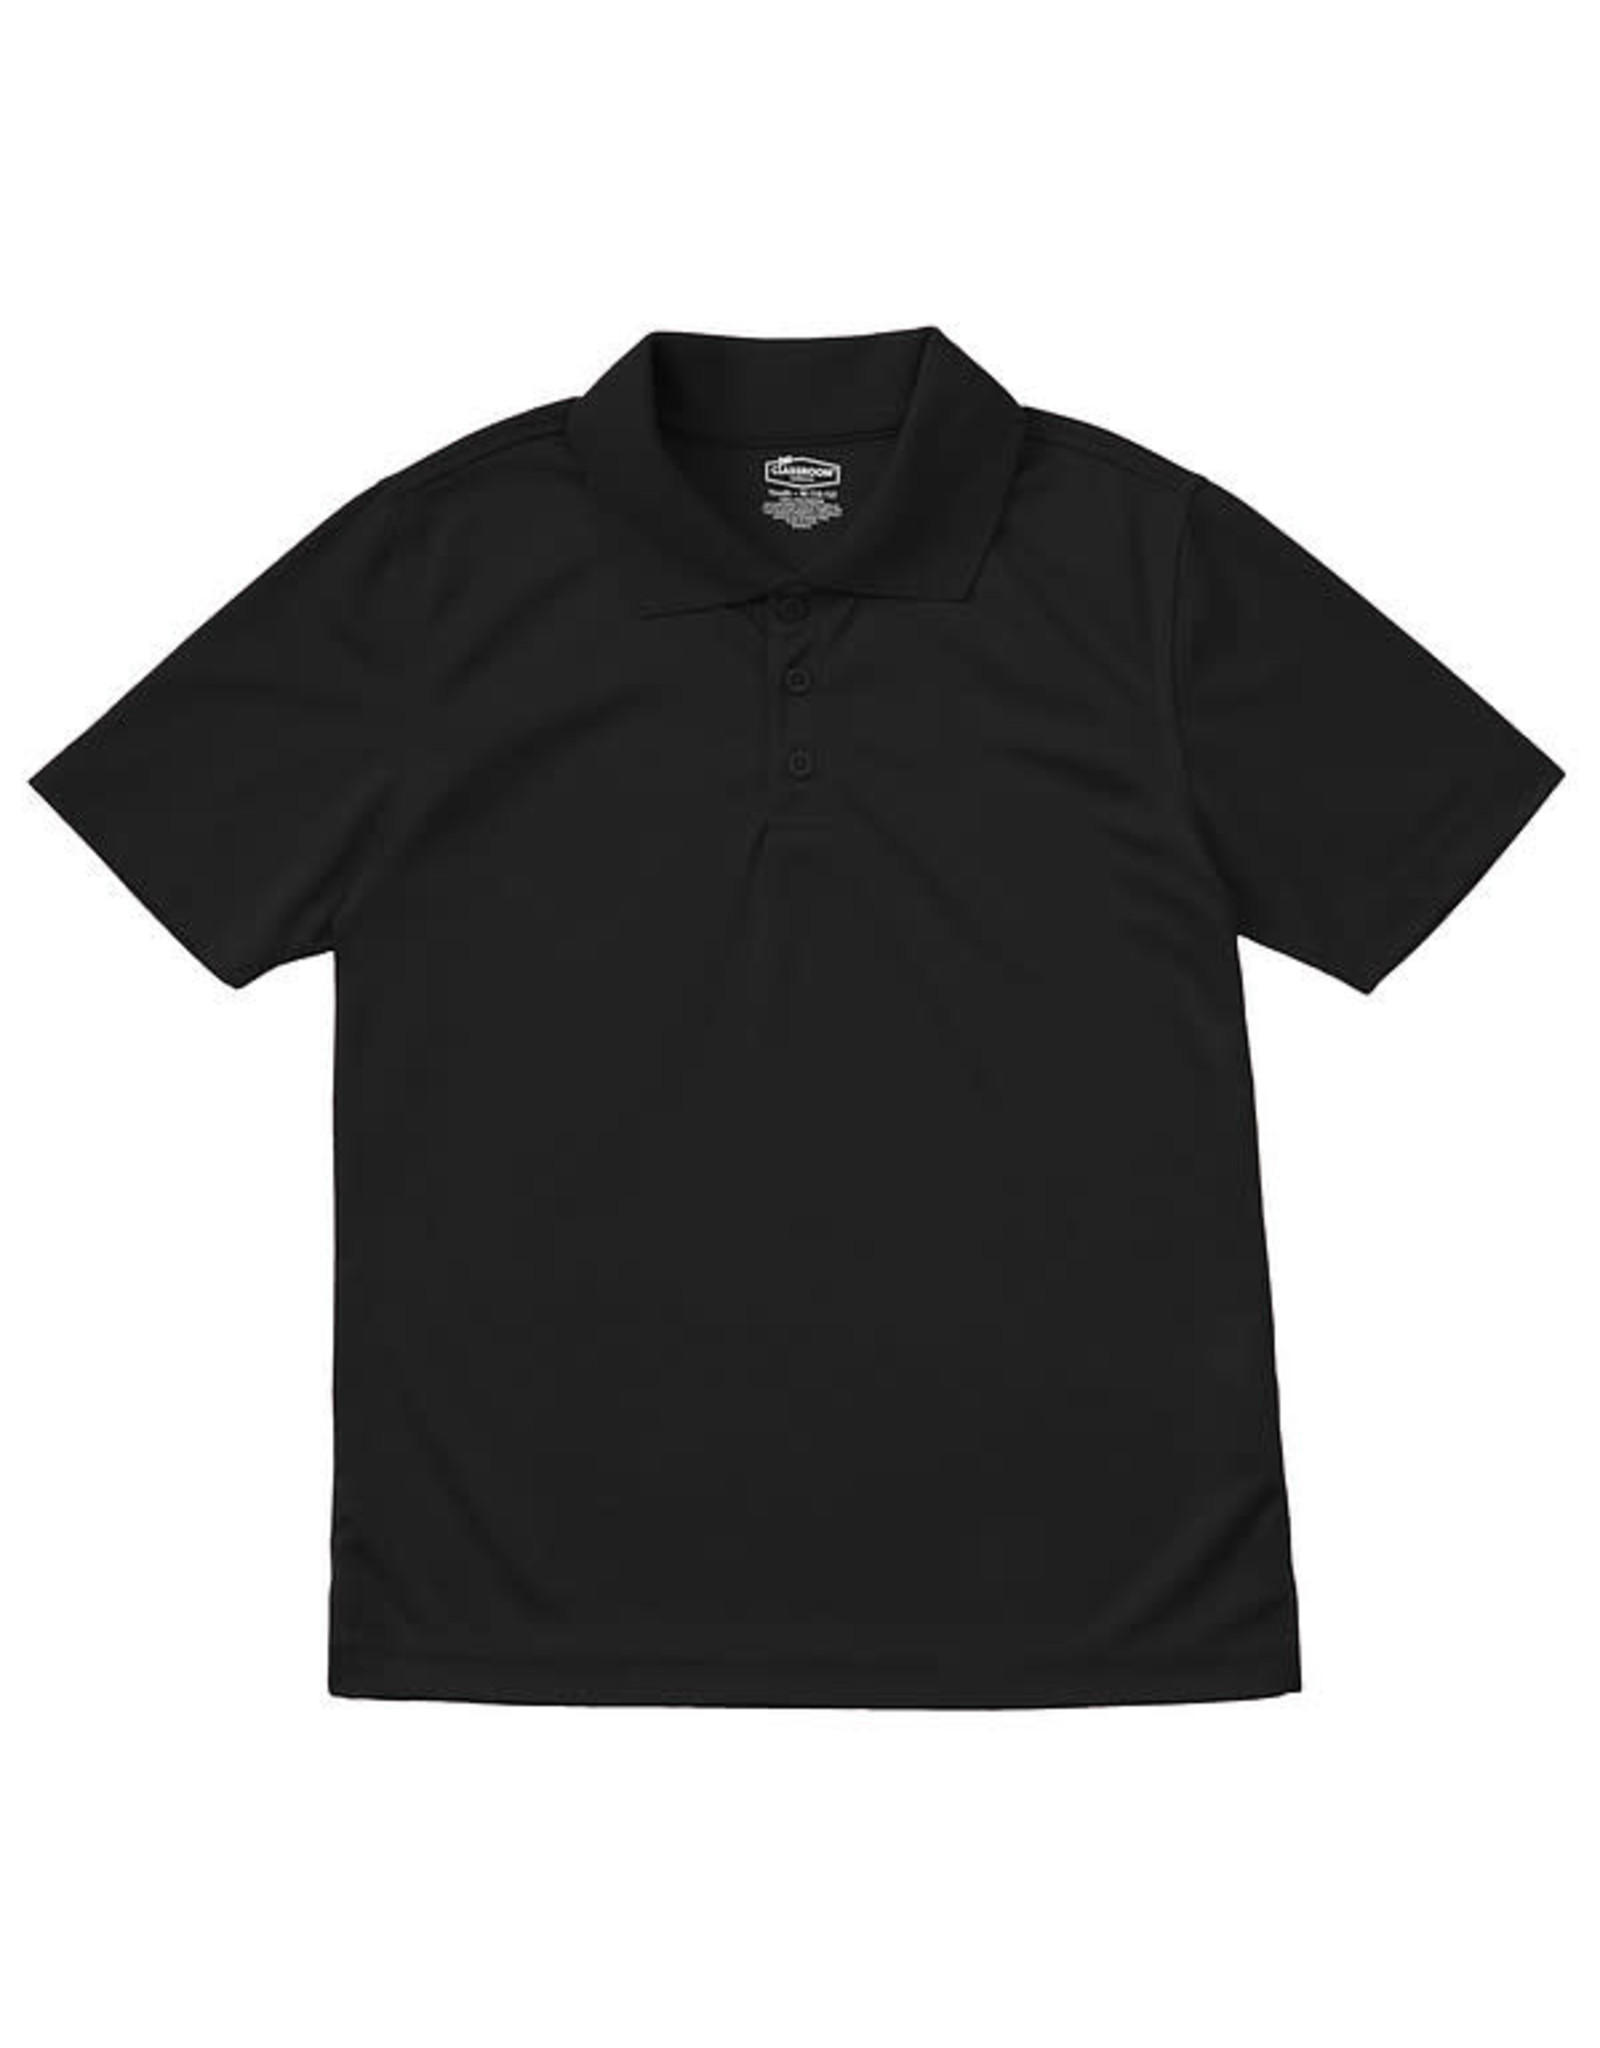 Classroom Adult Unisex Moisture-Wicking Polo Shirt SSBK L